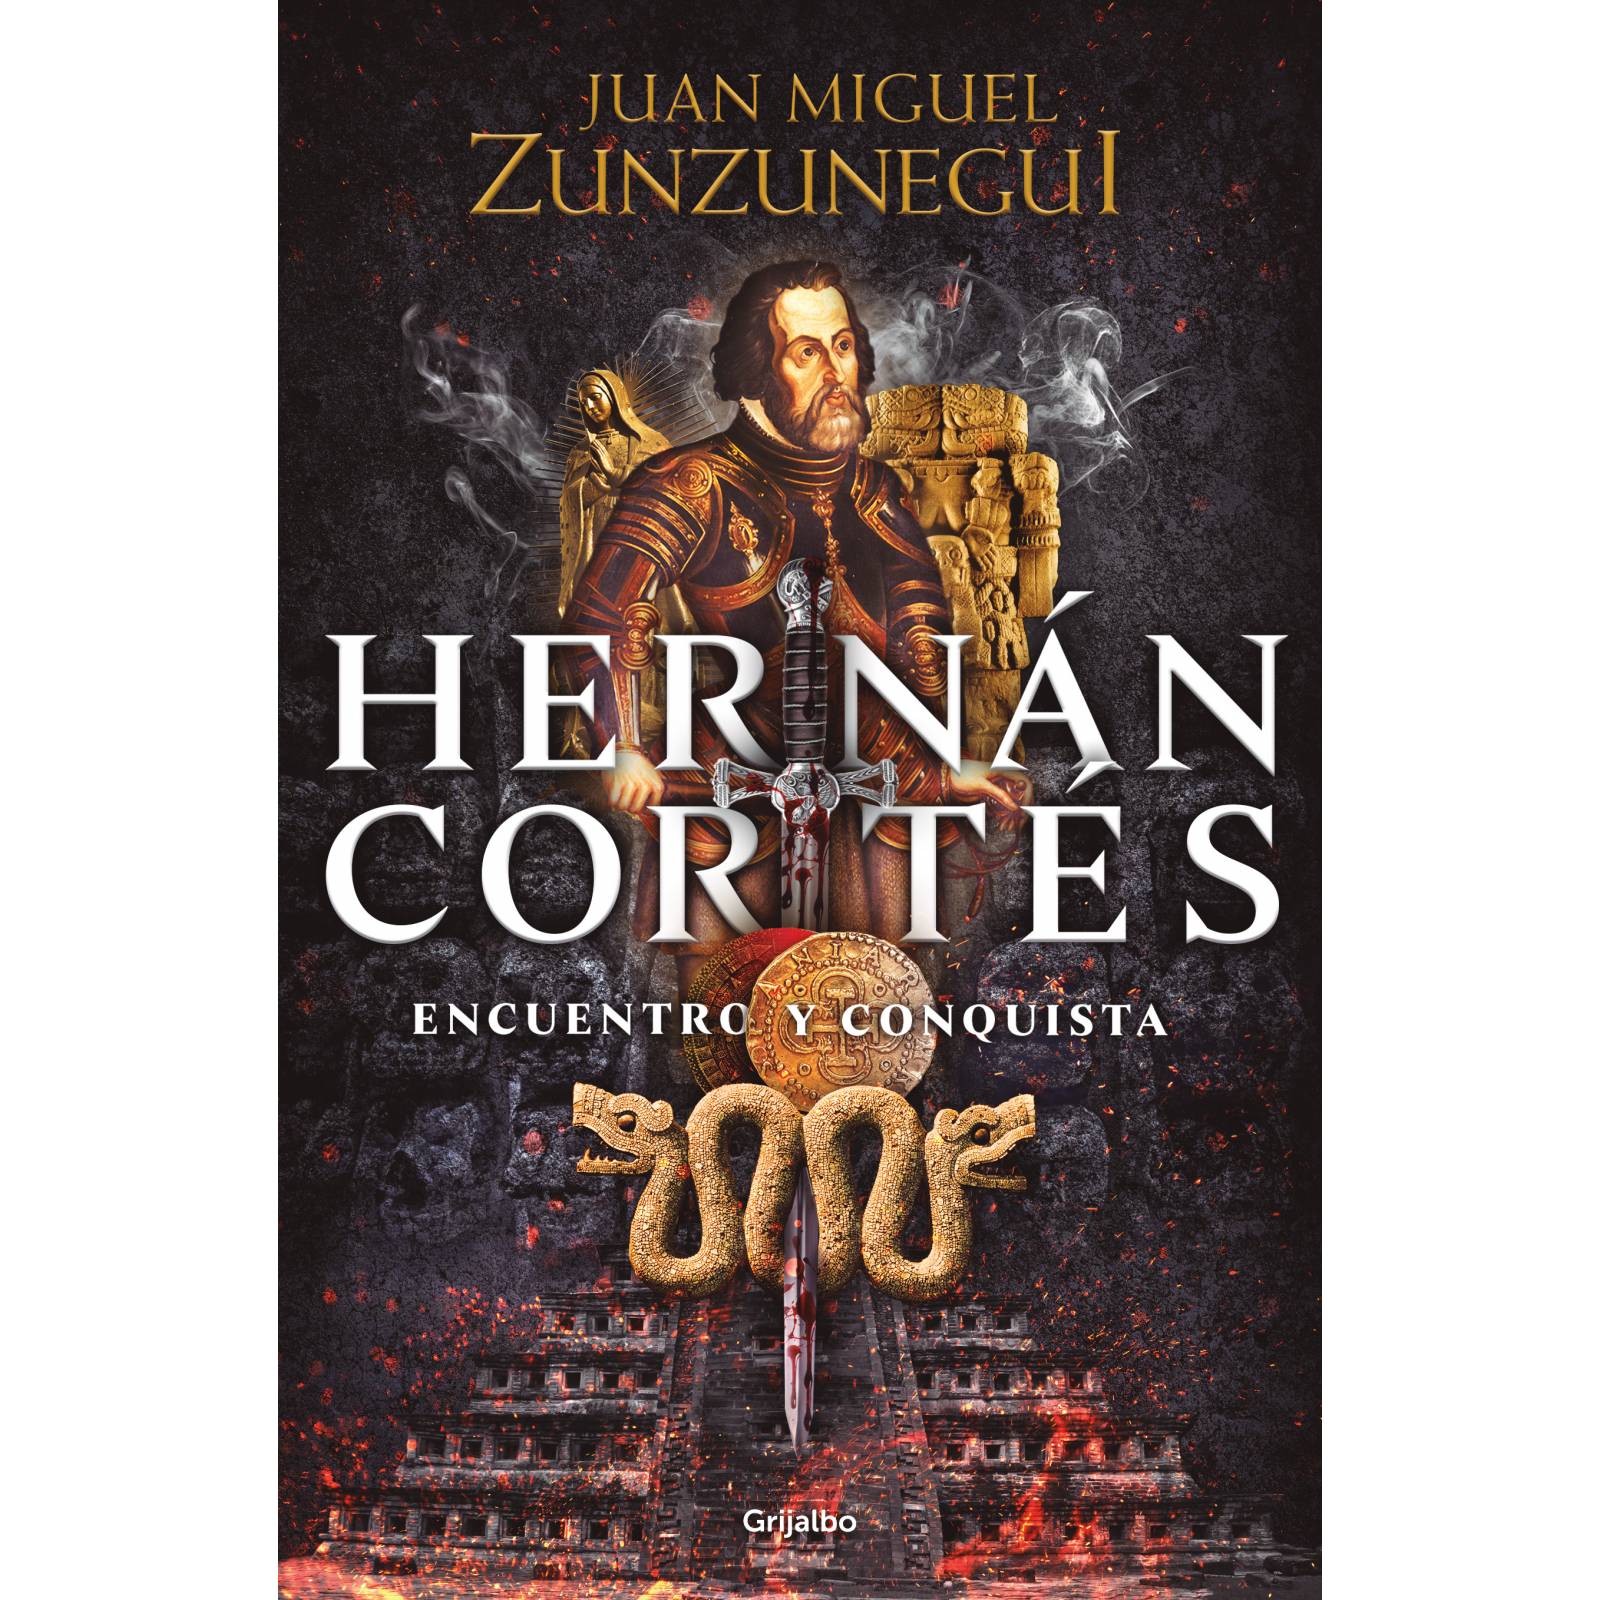 Hernán CortésAutorZunzunegui, Juan Miguel